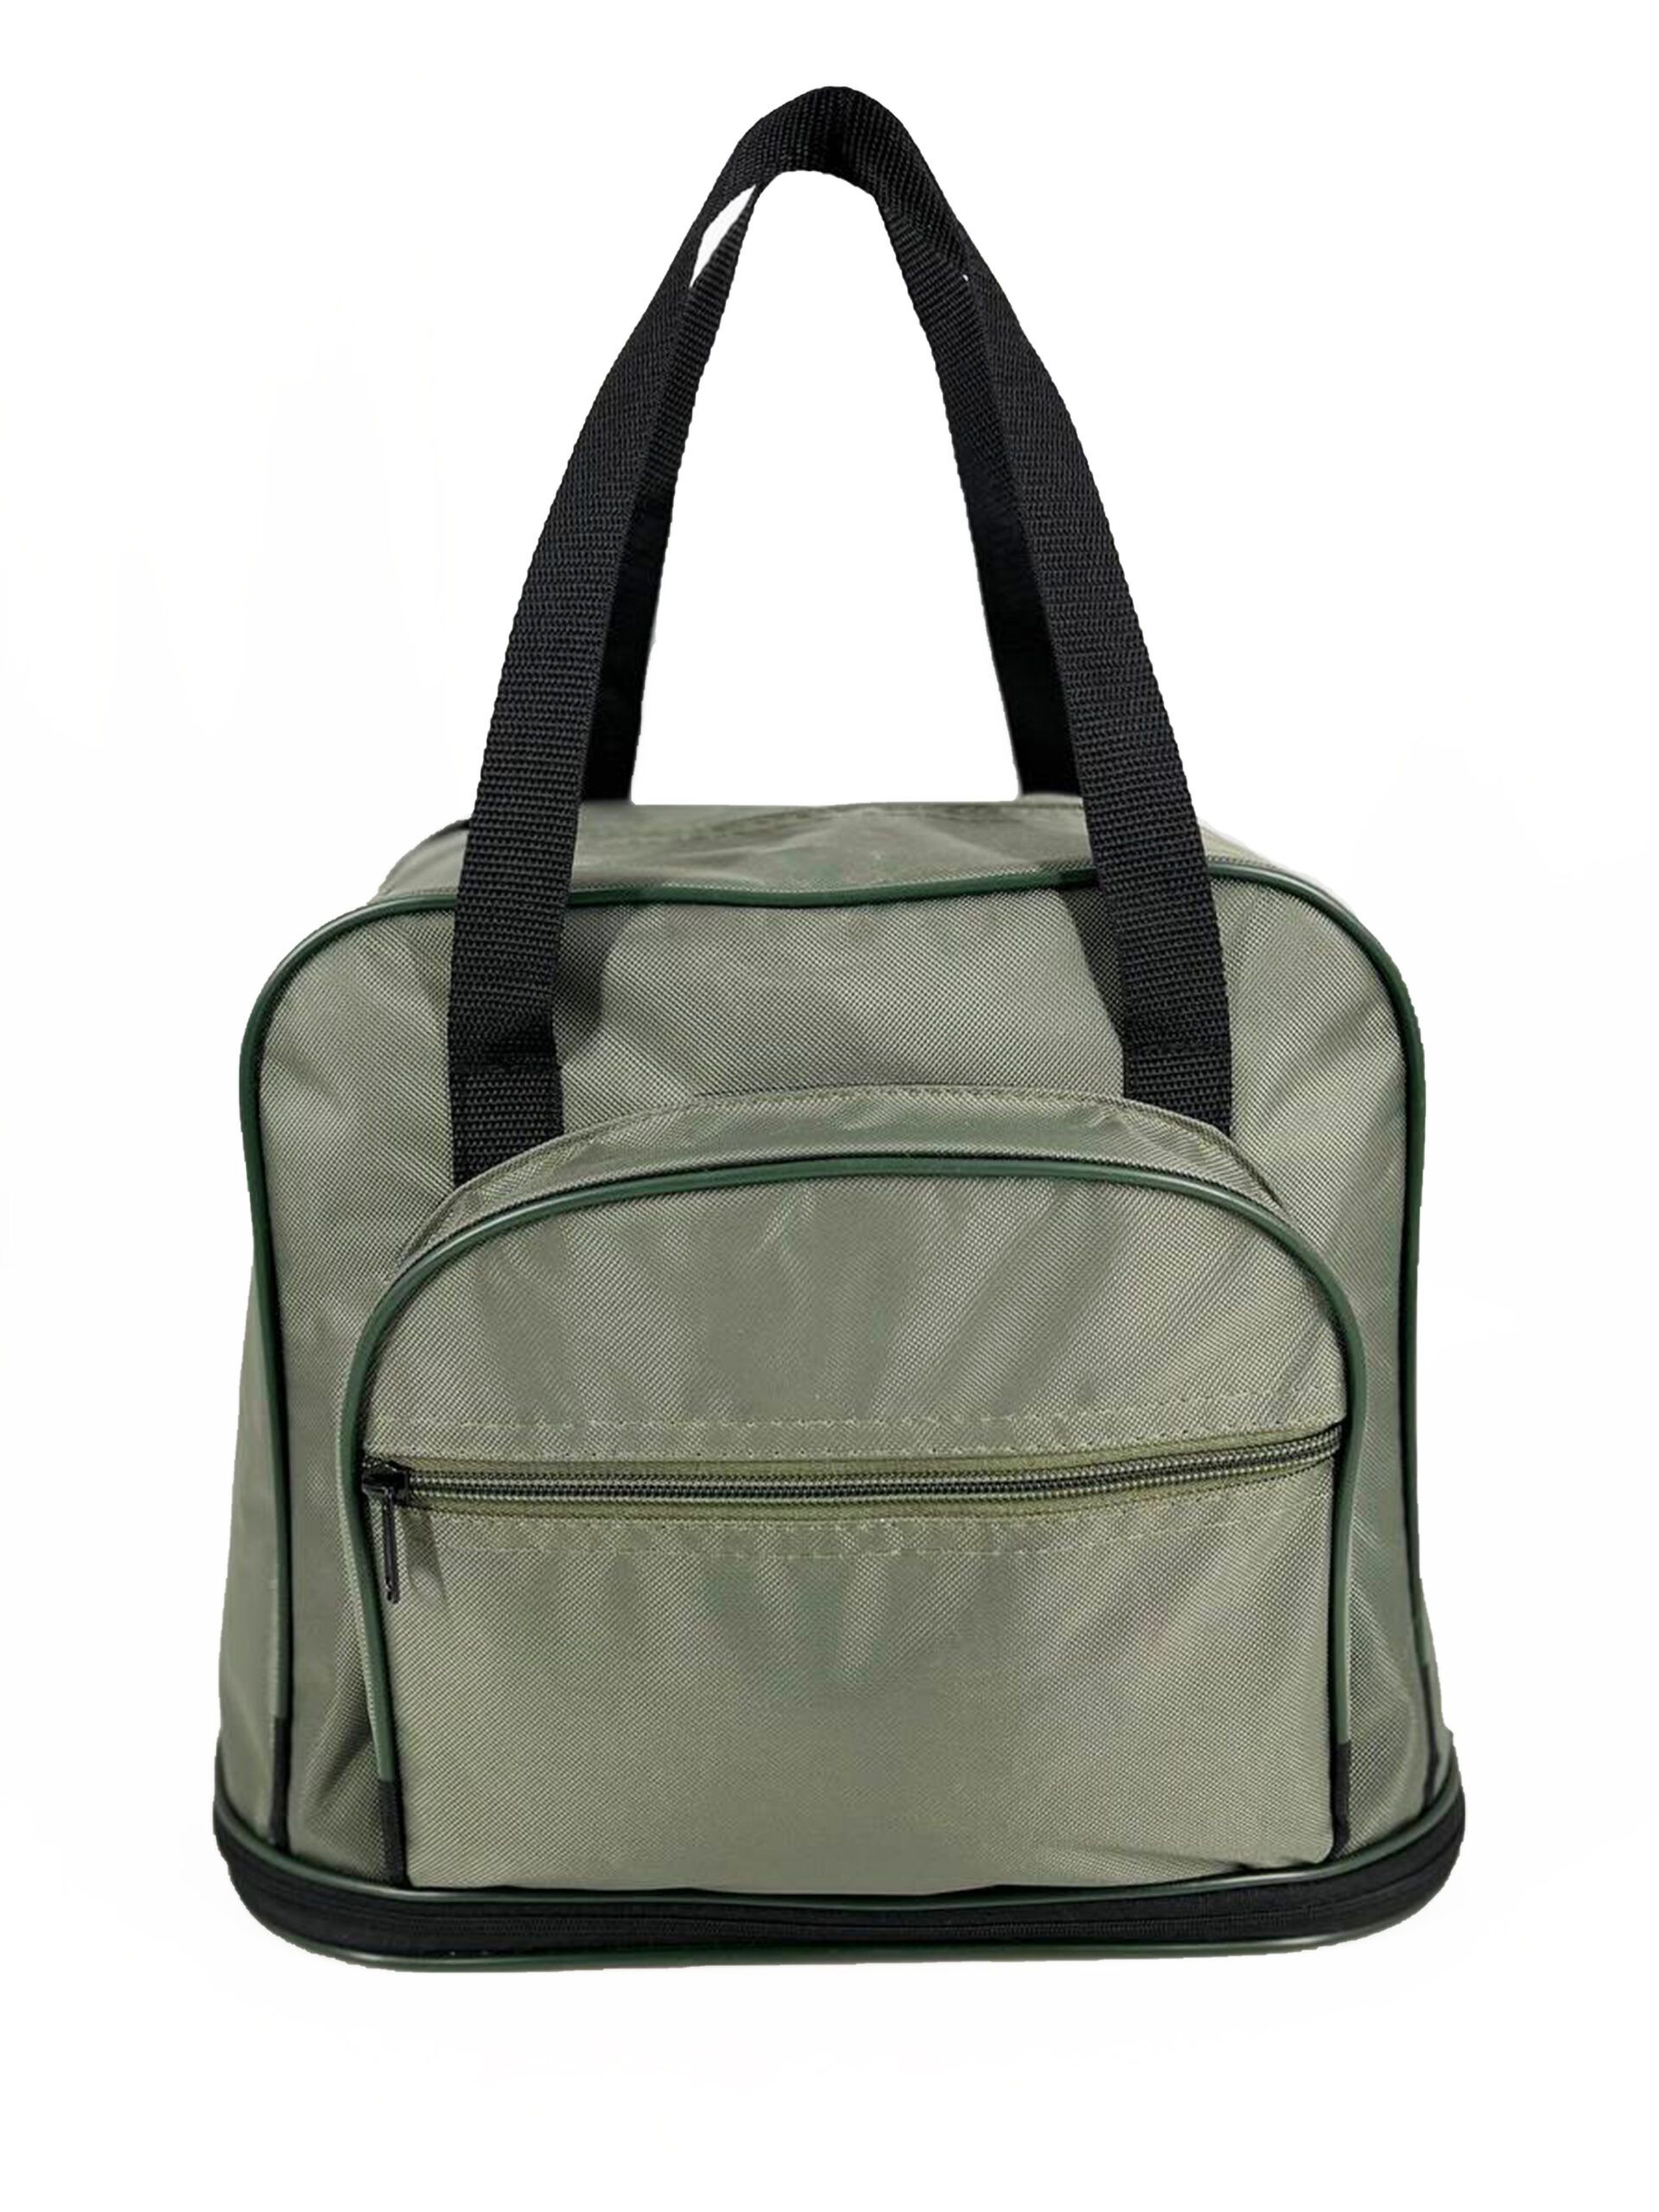 Дорожная сумка мужская lootbag Фортуна темно-зеленая, 27х34х19 см